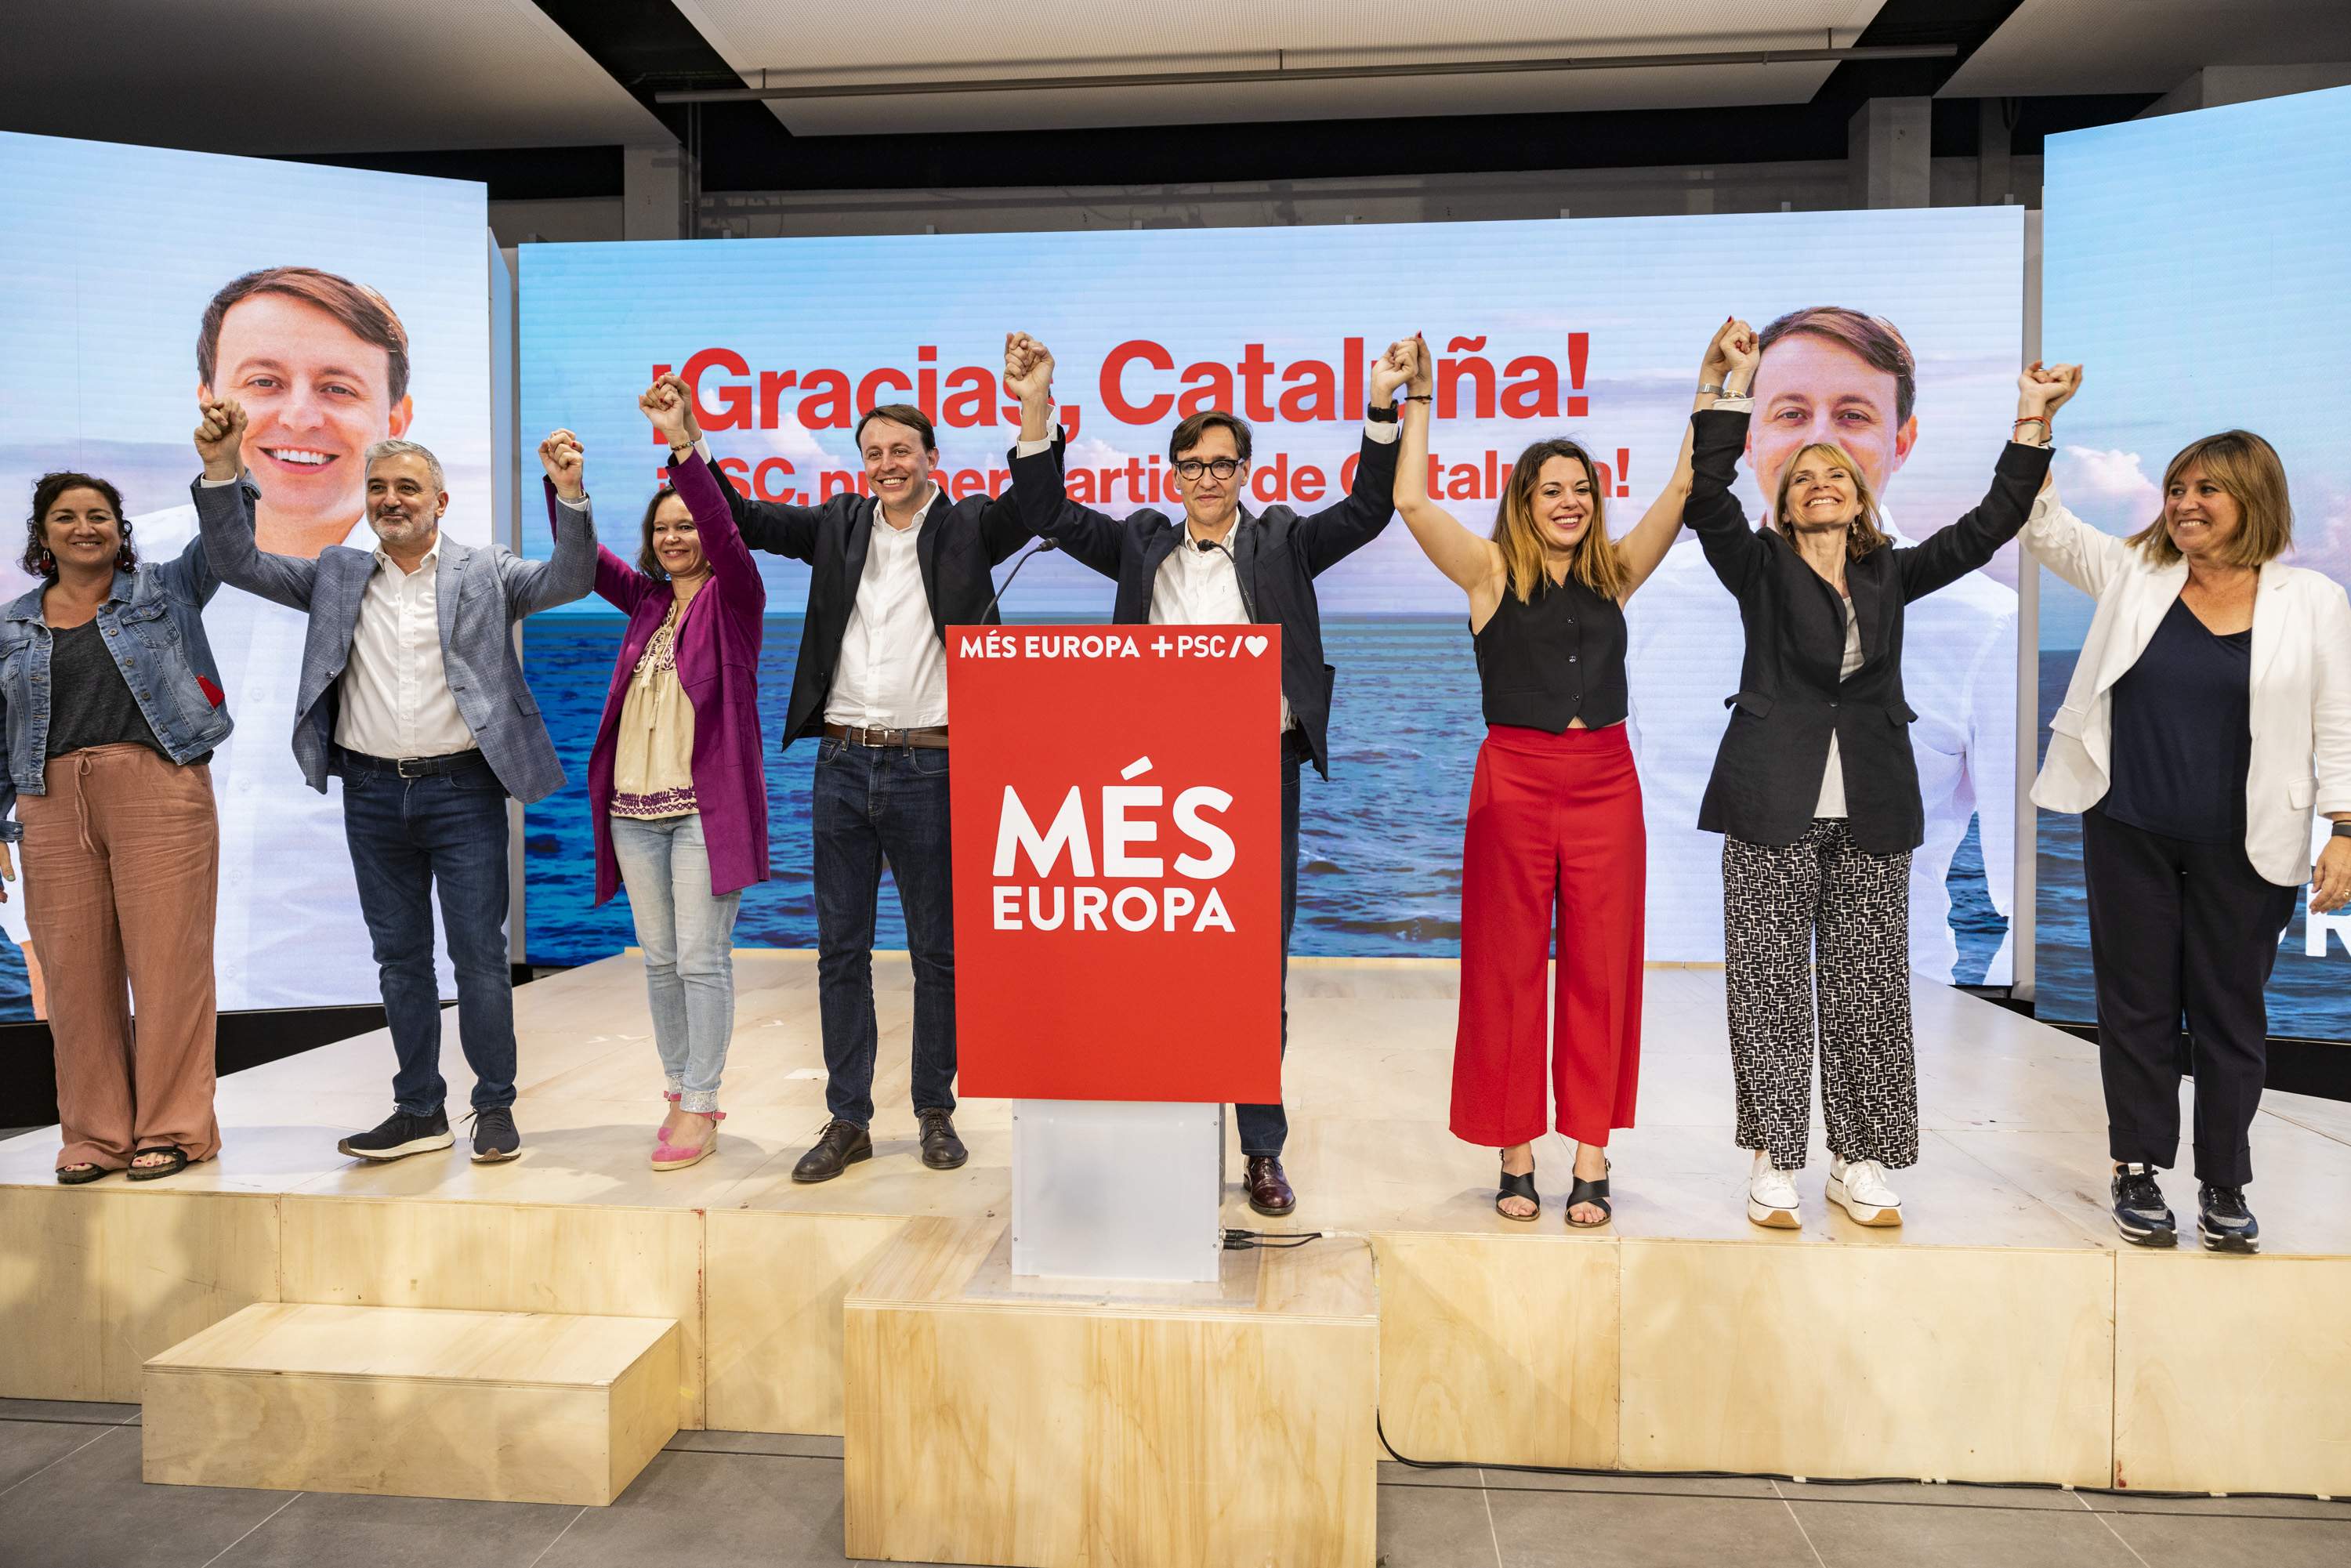 Illa ve reforzada la "nueva etapa" en Catalunya con la victoria e insta a los partidos a reflexionar